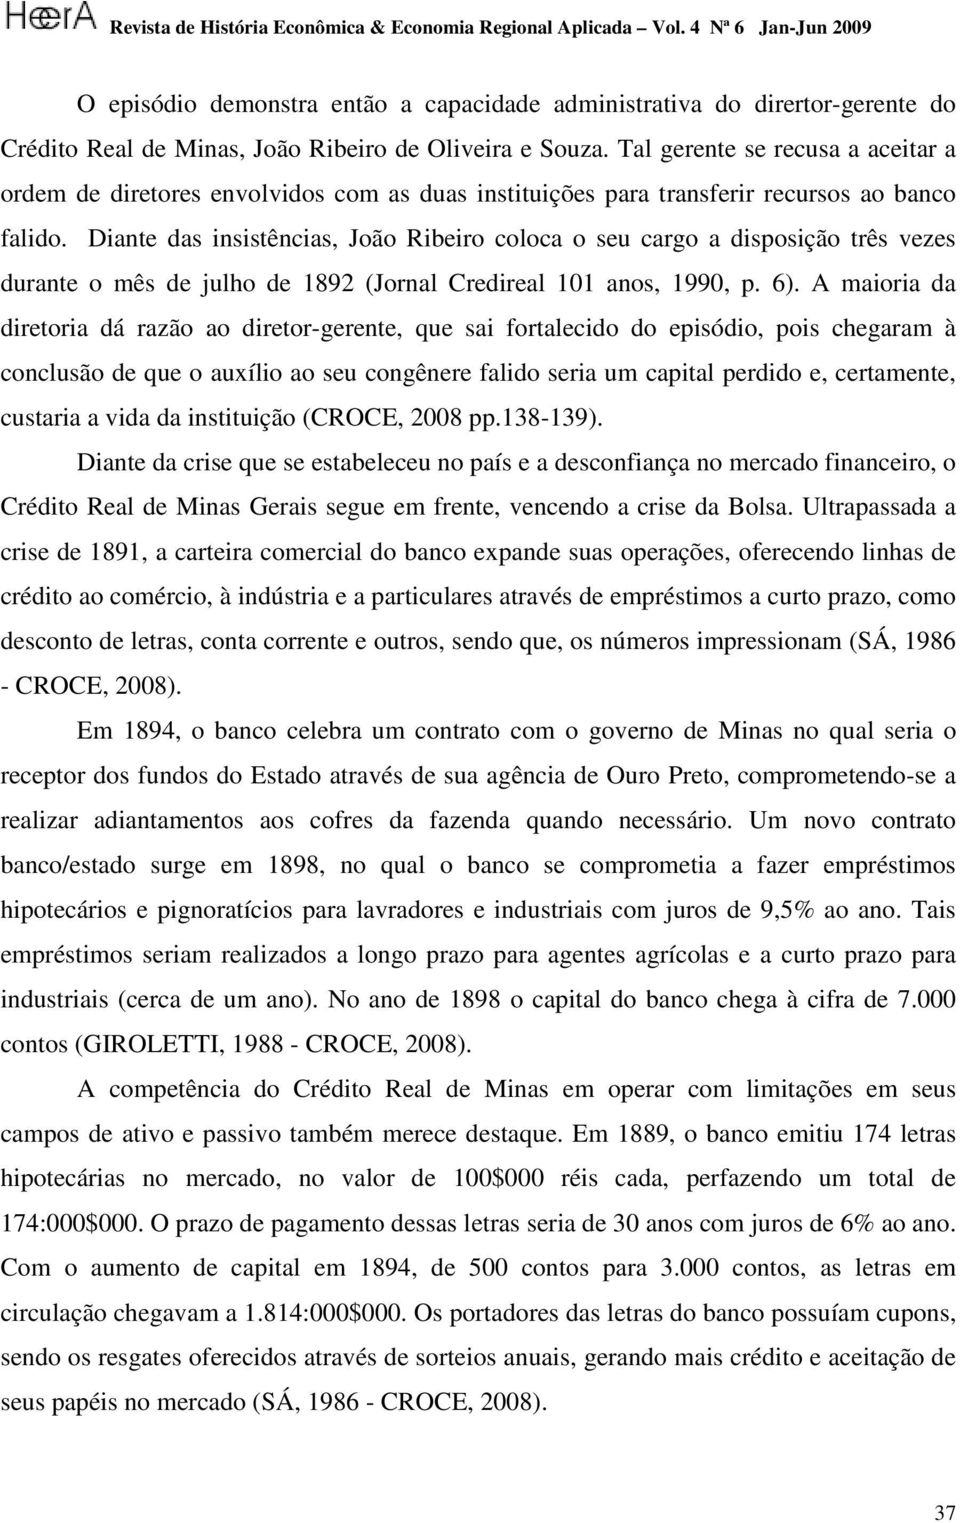 Diante das insistências, João Ribeiro coloca o seu cargo a disposição três vezes durante o mês de julho de 1892 (Jornal Credireal 101 anos, 1990, p. 6).